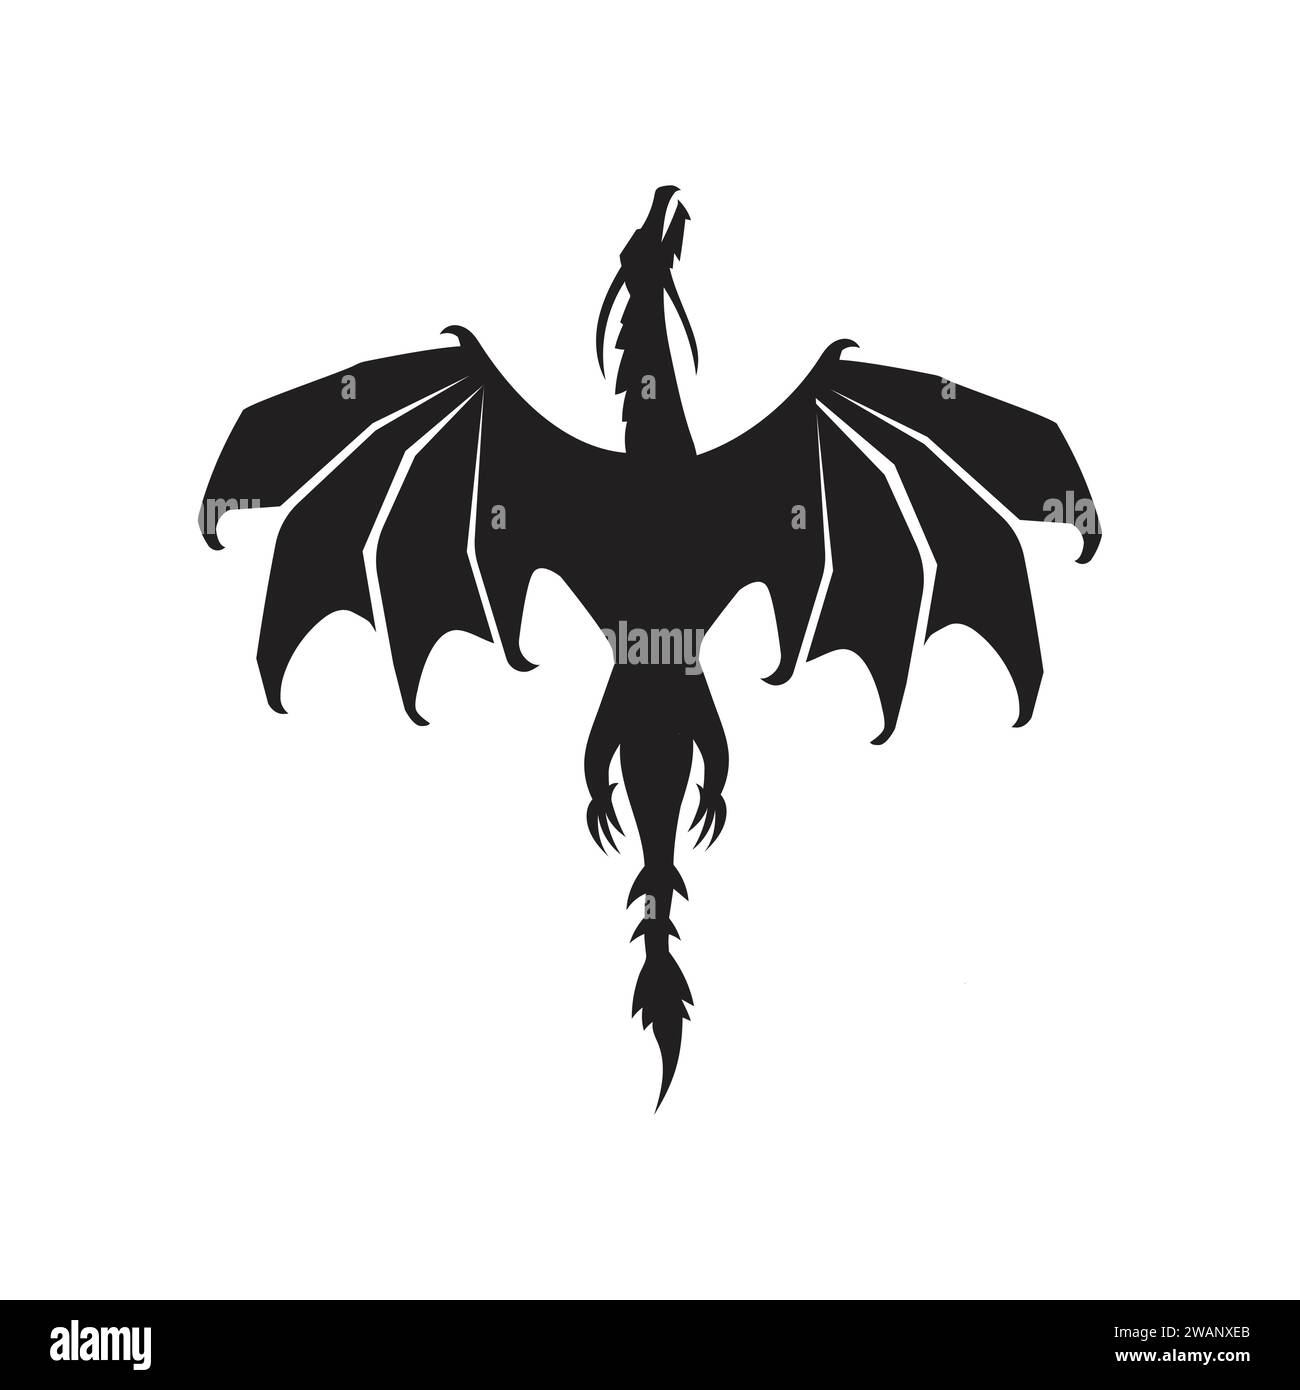 Silhouette di illustrazione vettoriale di draghi volanti, immagine stilizzata di draghi in bianco e nero. Illustrazione Vettoriale